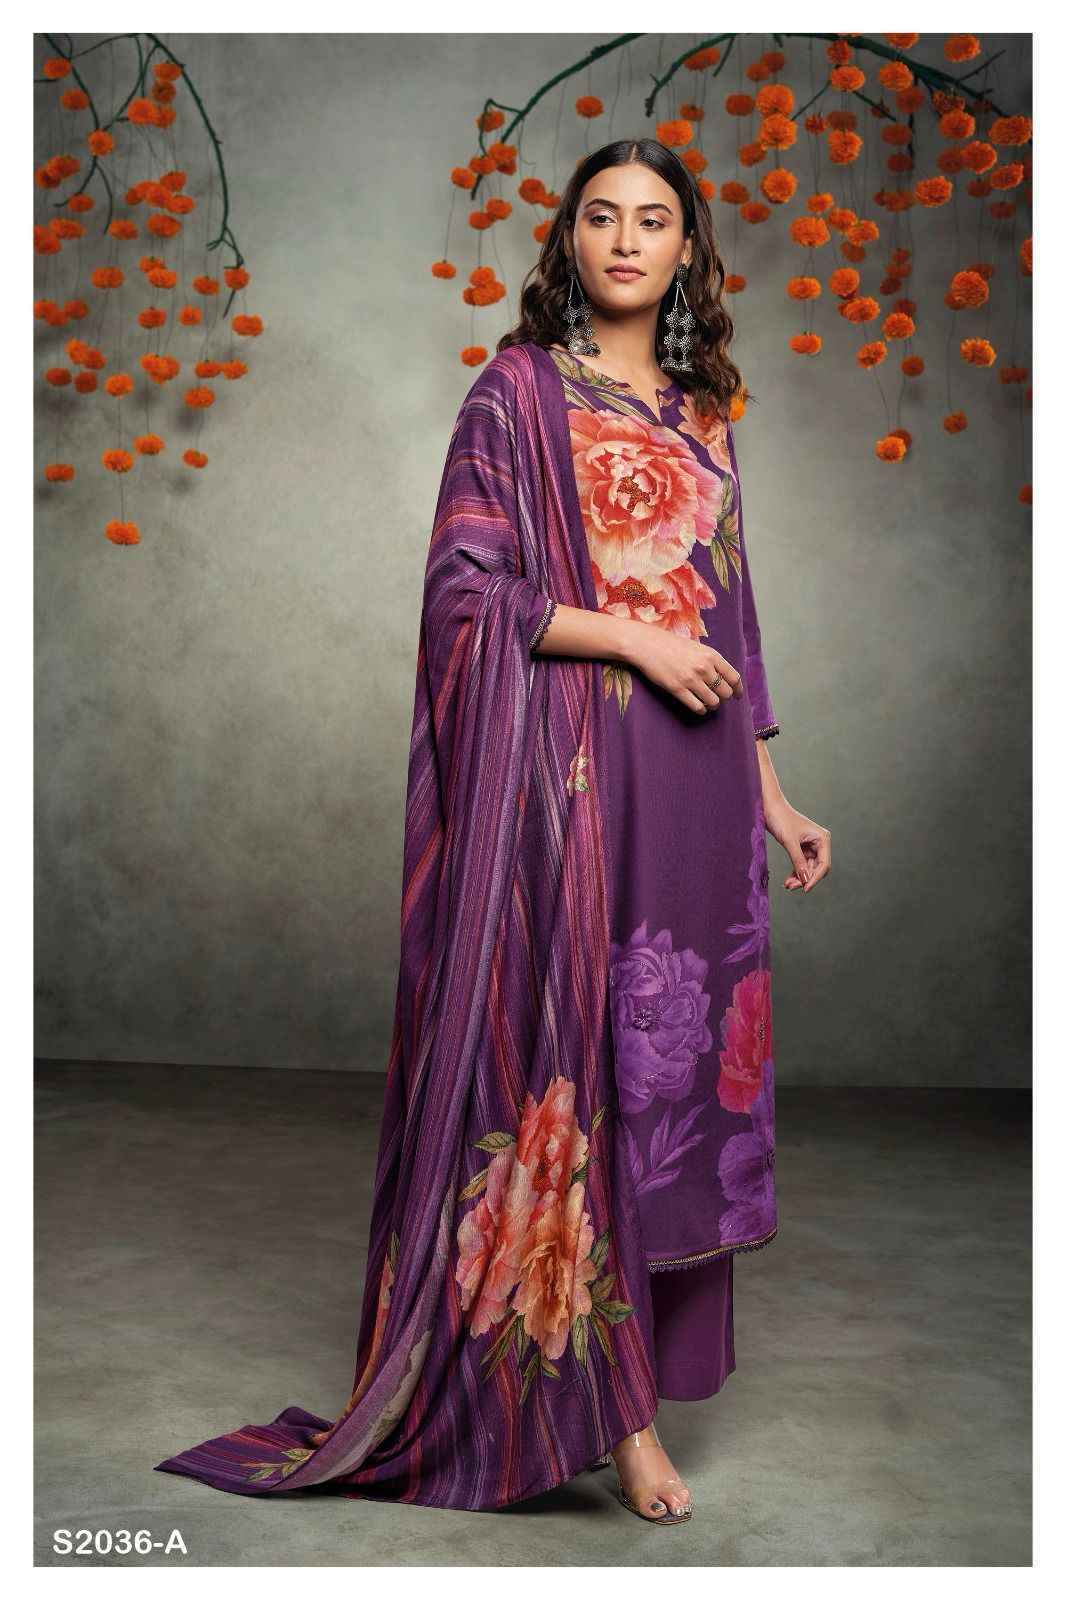 Ganga Sadhya 2036 Pashmina Dress Material 4 pcs Catalogue - Wholesale Factory